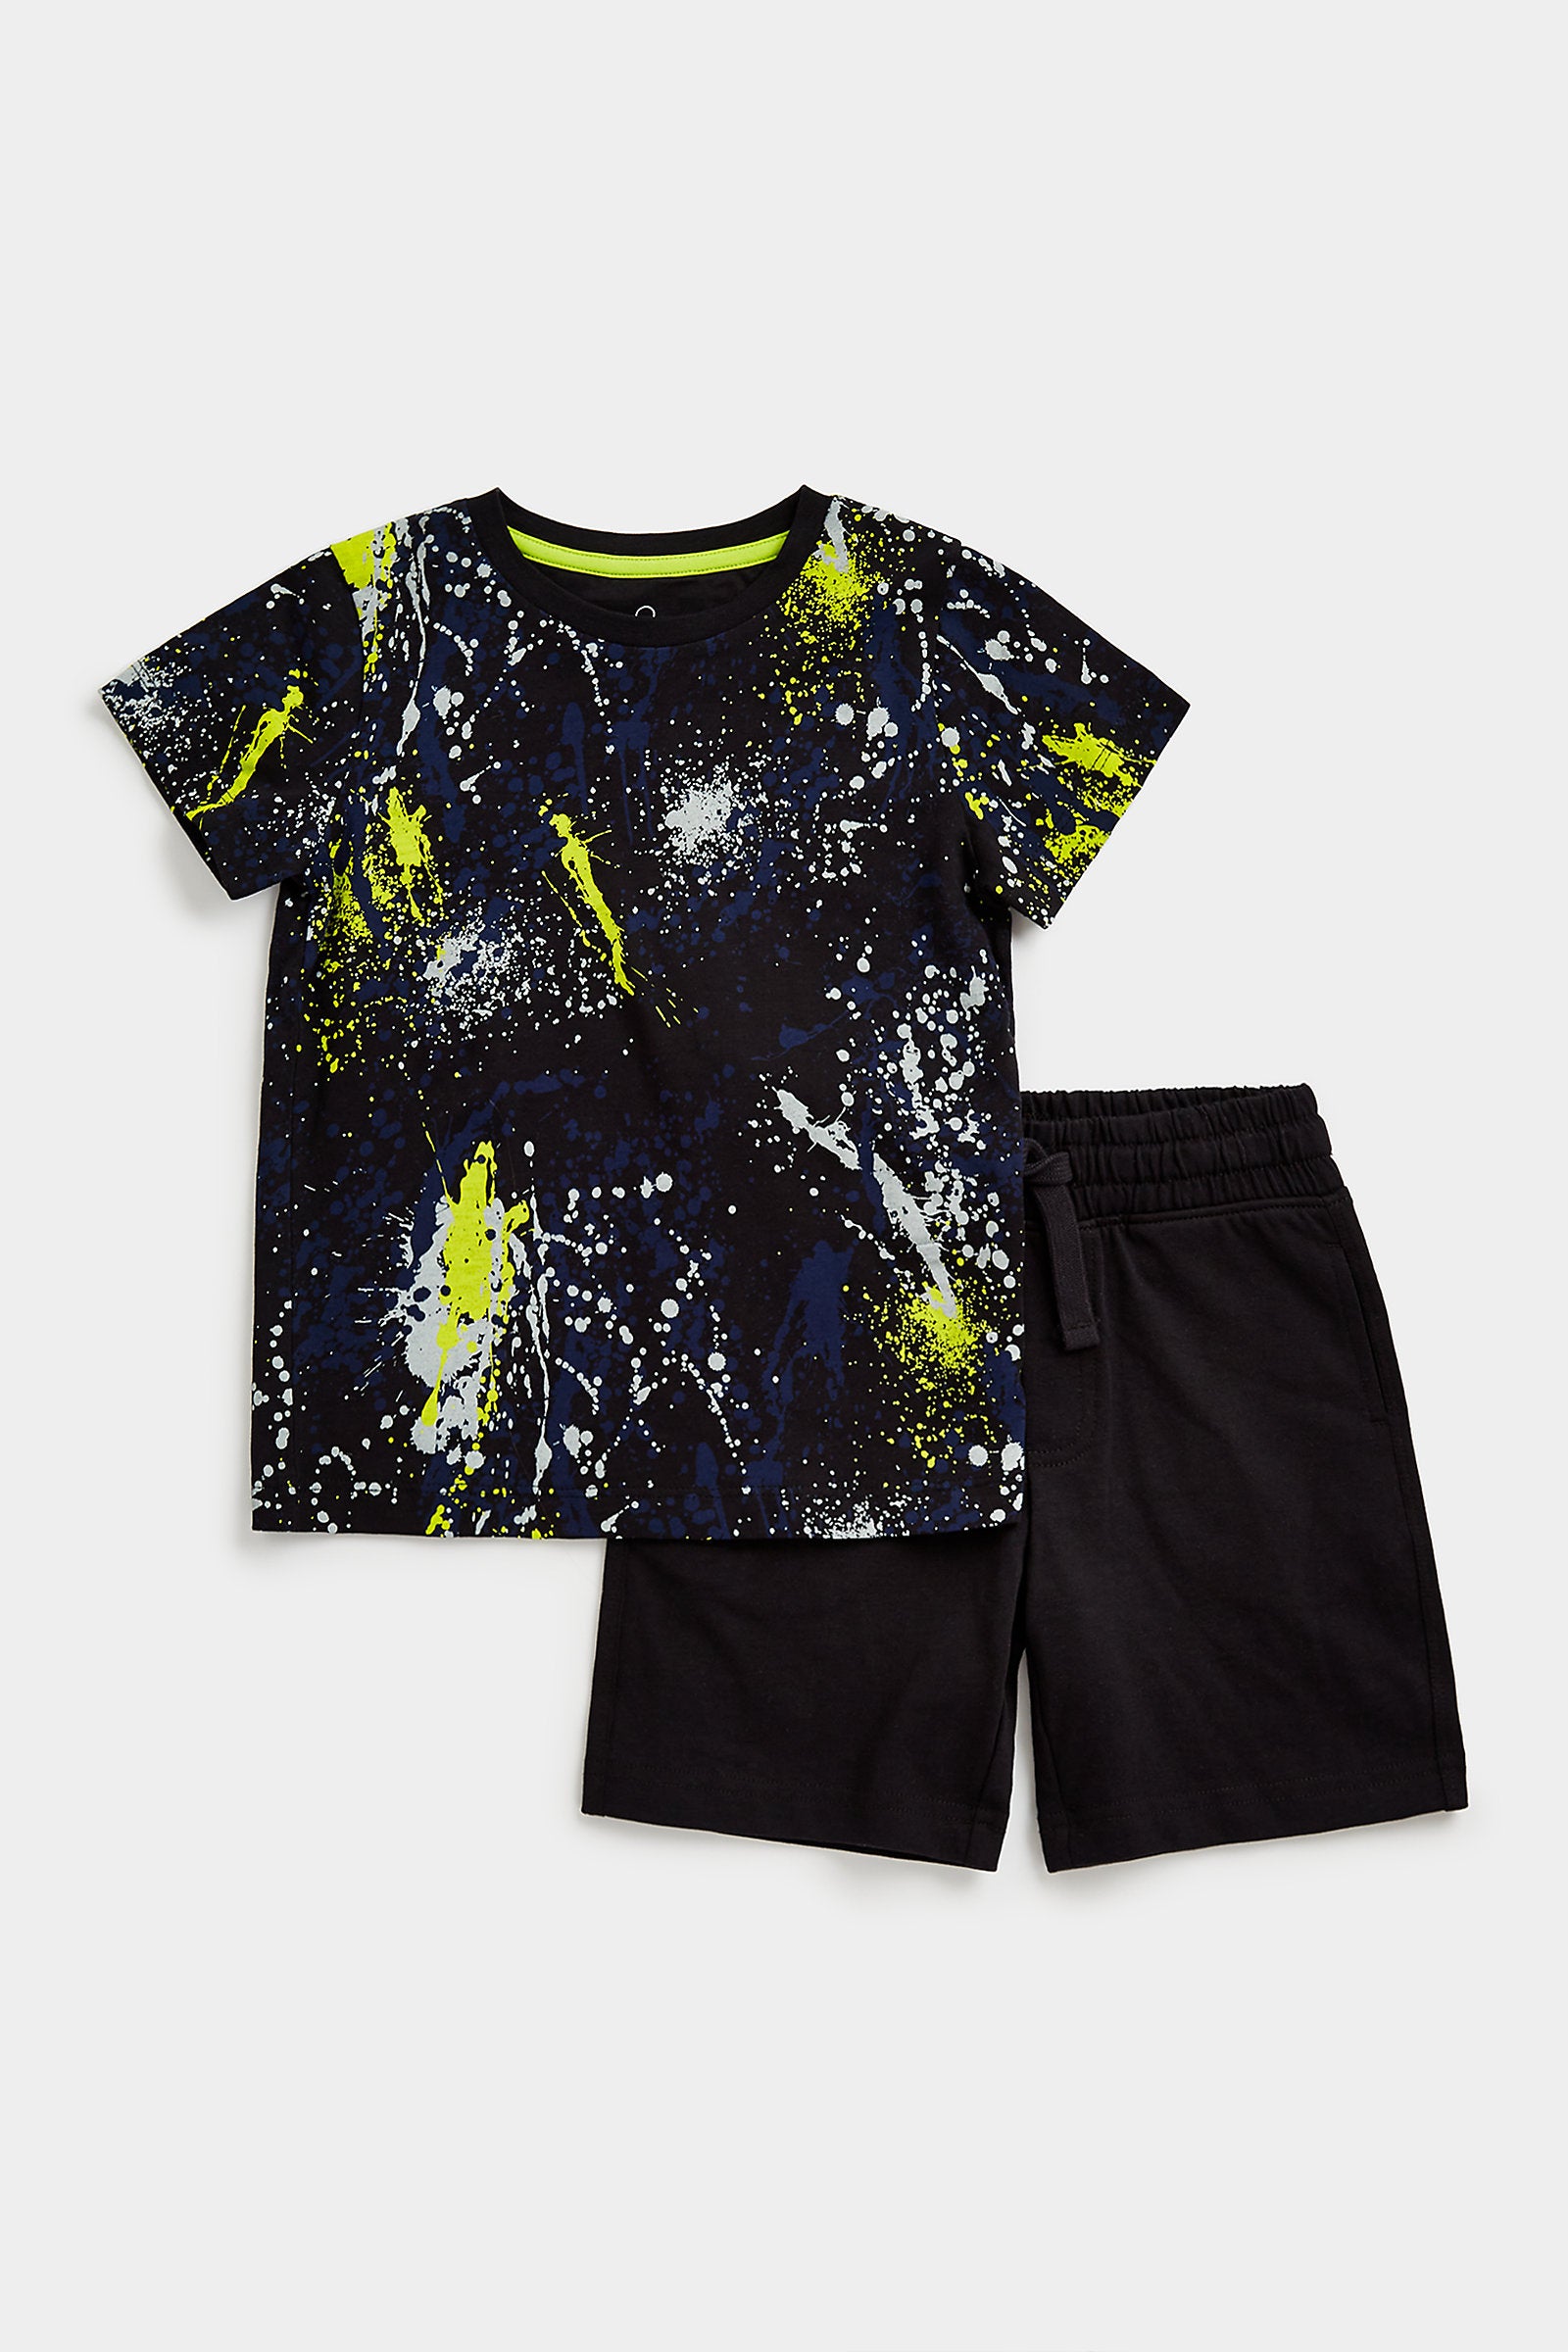 Mothercare Splat Shorts and T-Shirt Set